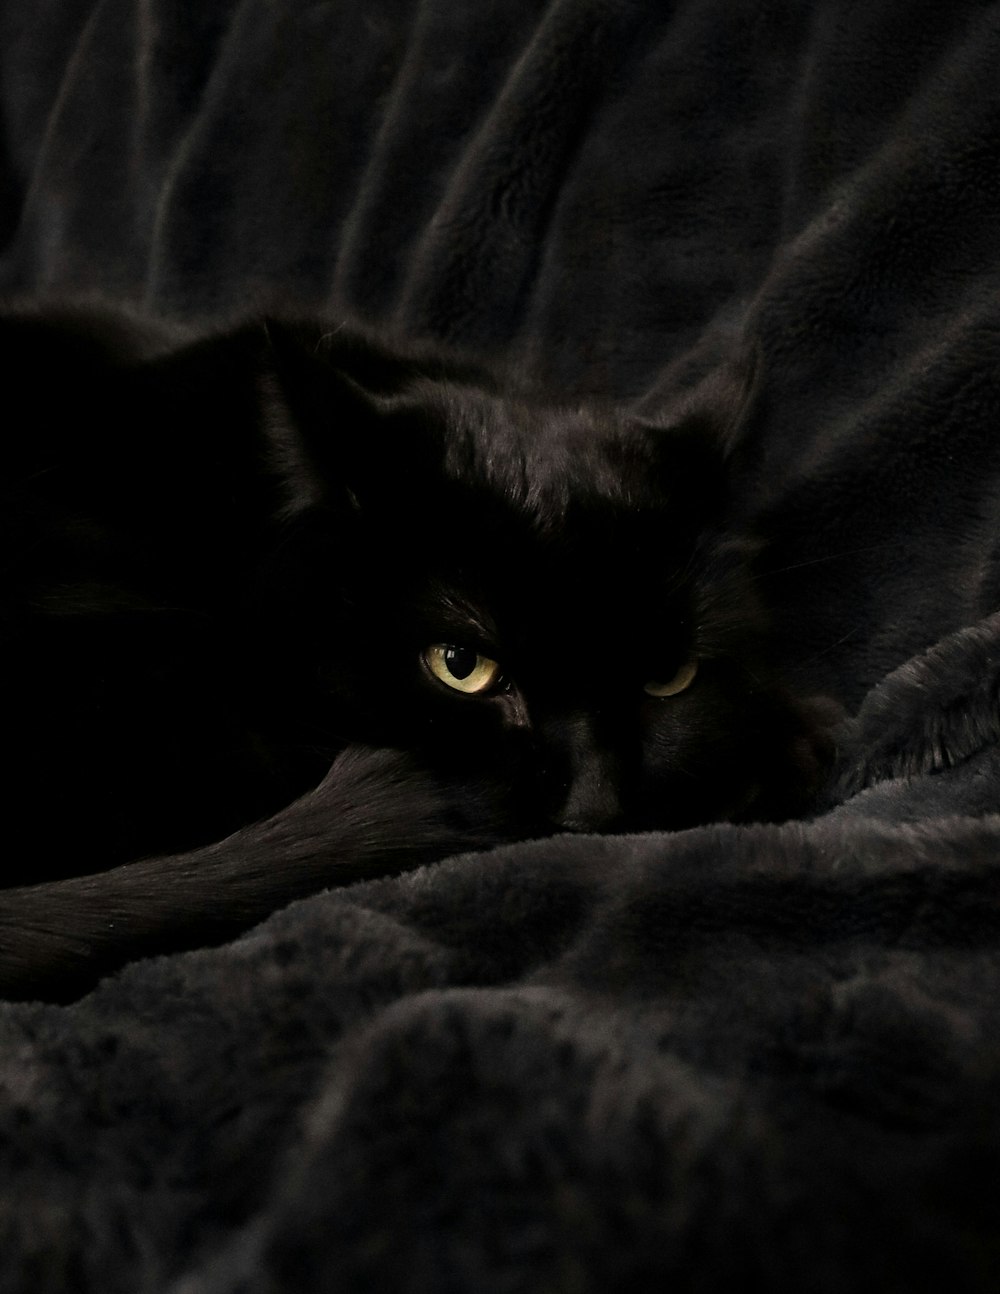 chat noir couché sur textile gris